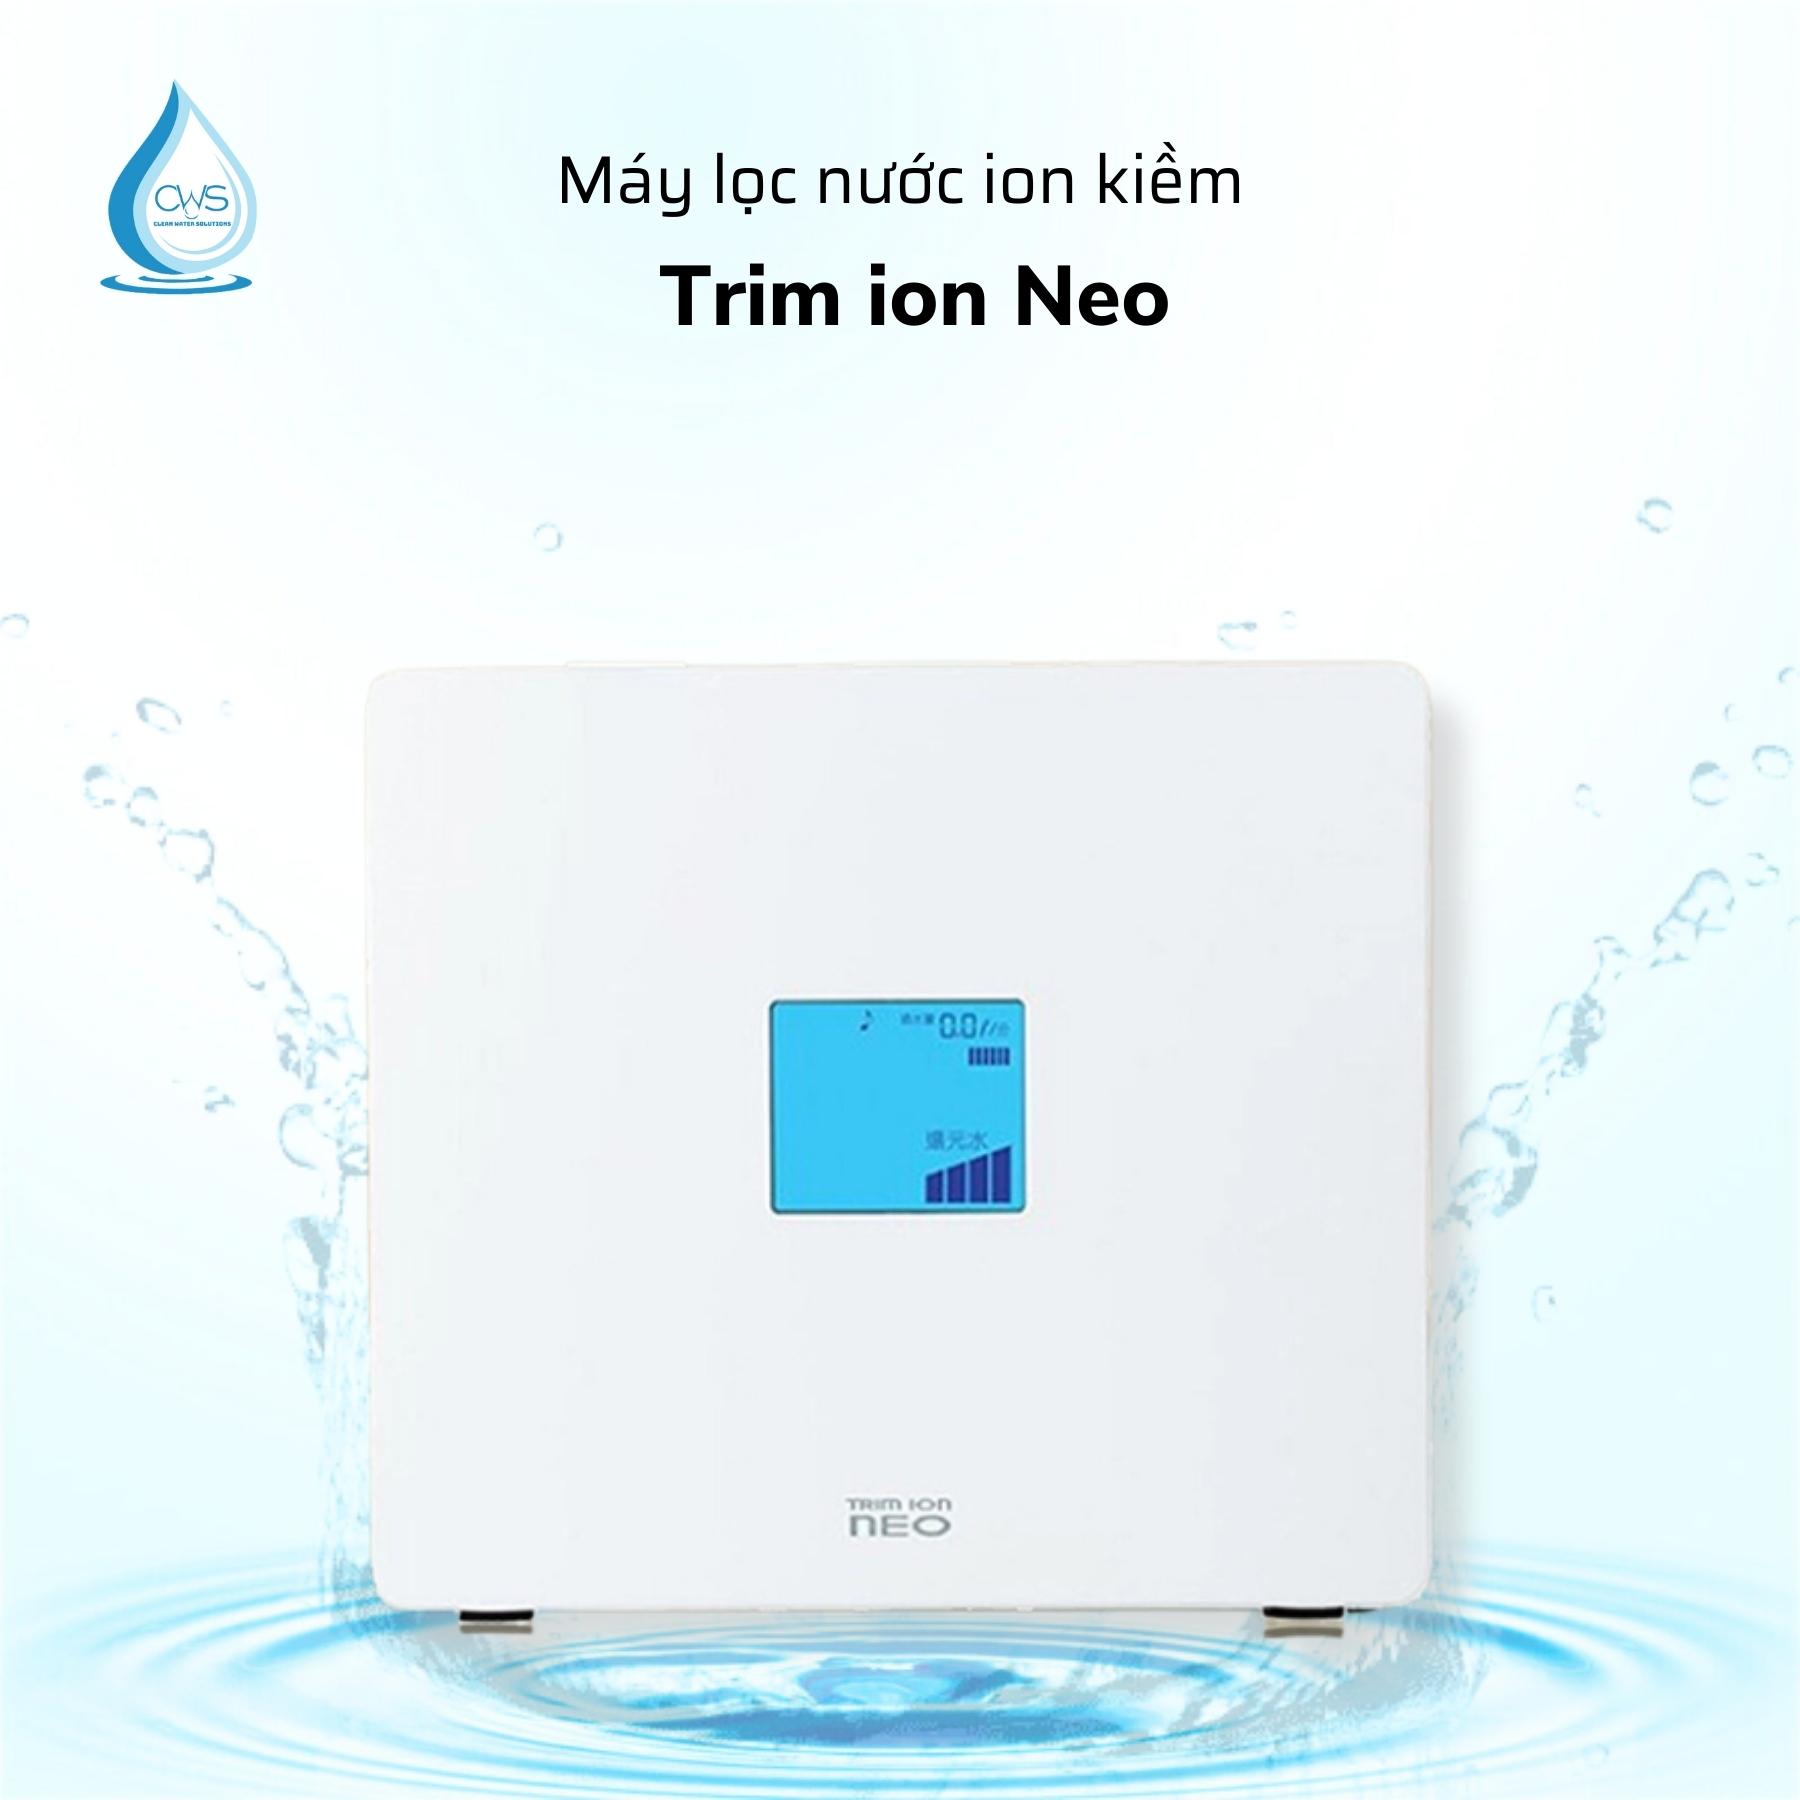 Máy lọc nước ion kiềm Trim ion Neo Nhật Bản - Giá sốc đón Tết